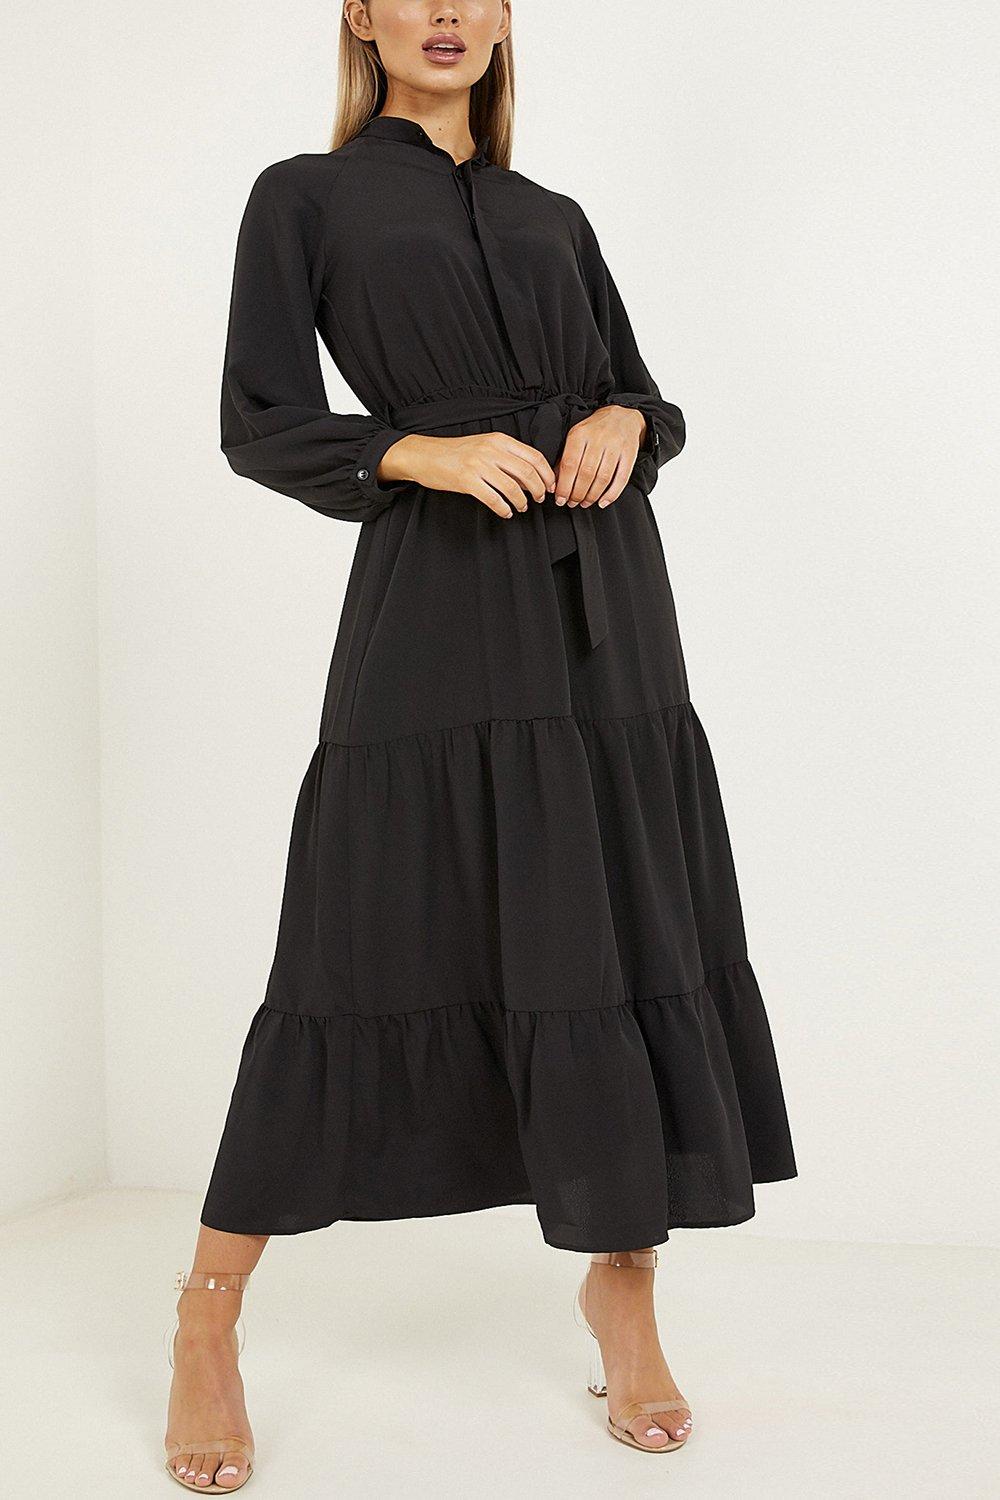 black tiered dress midi